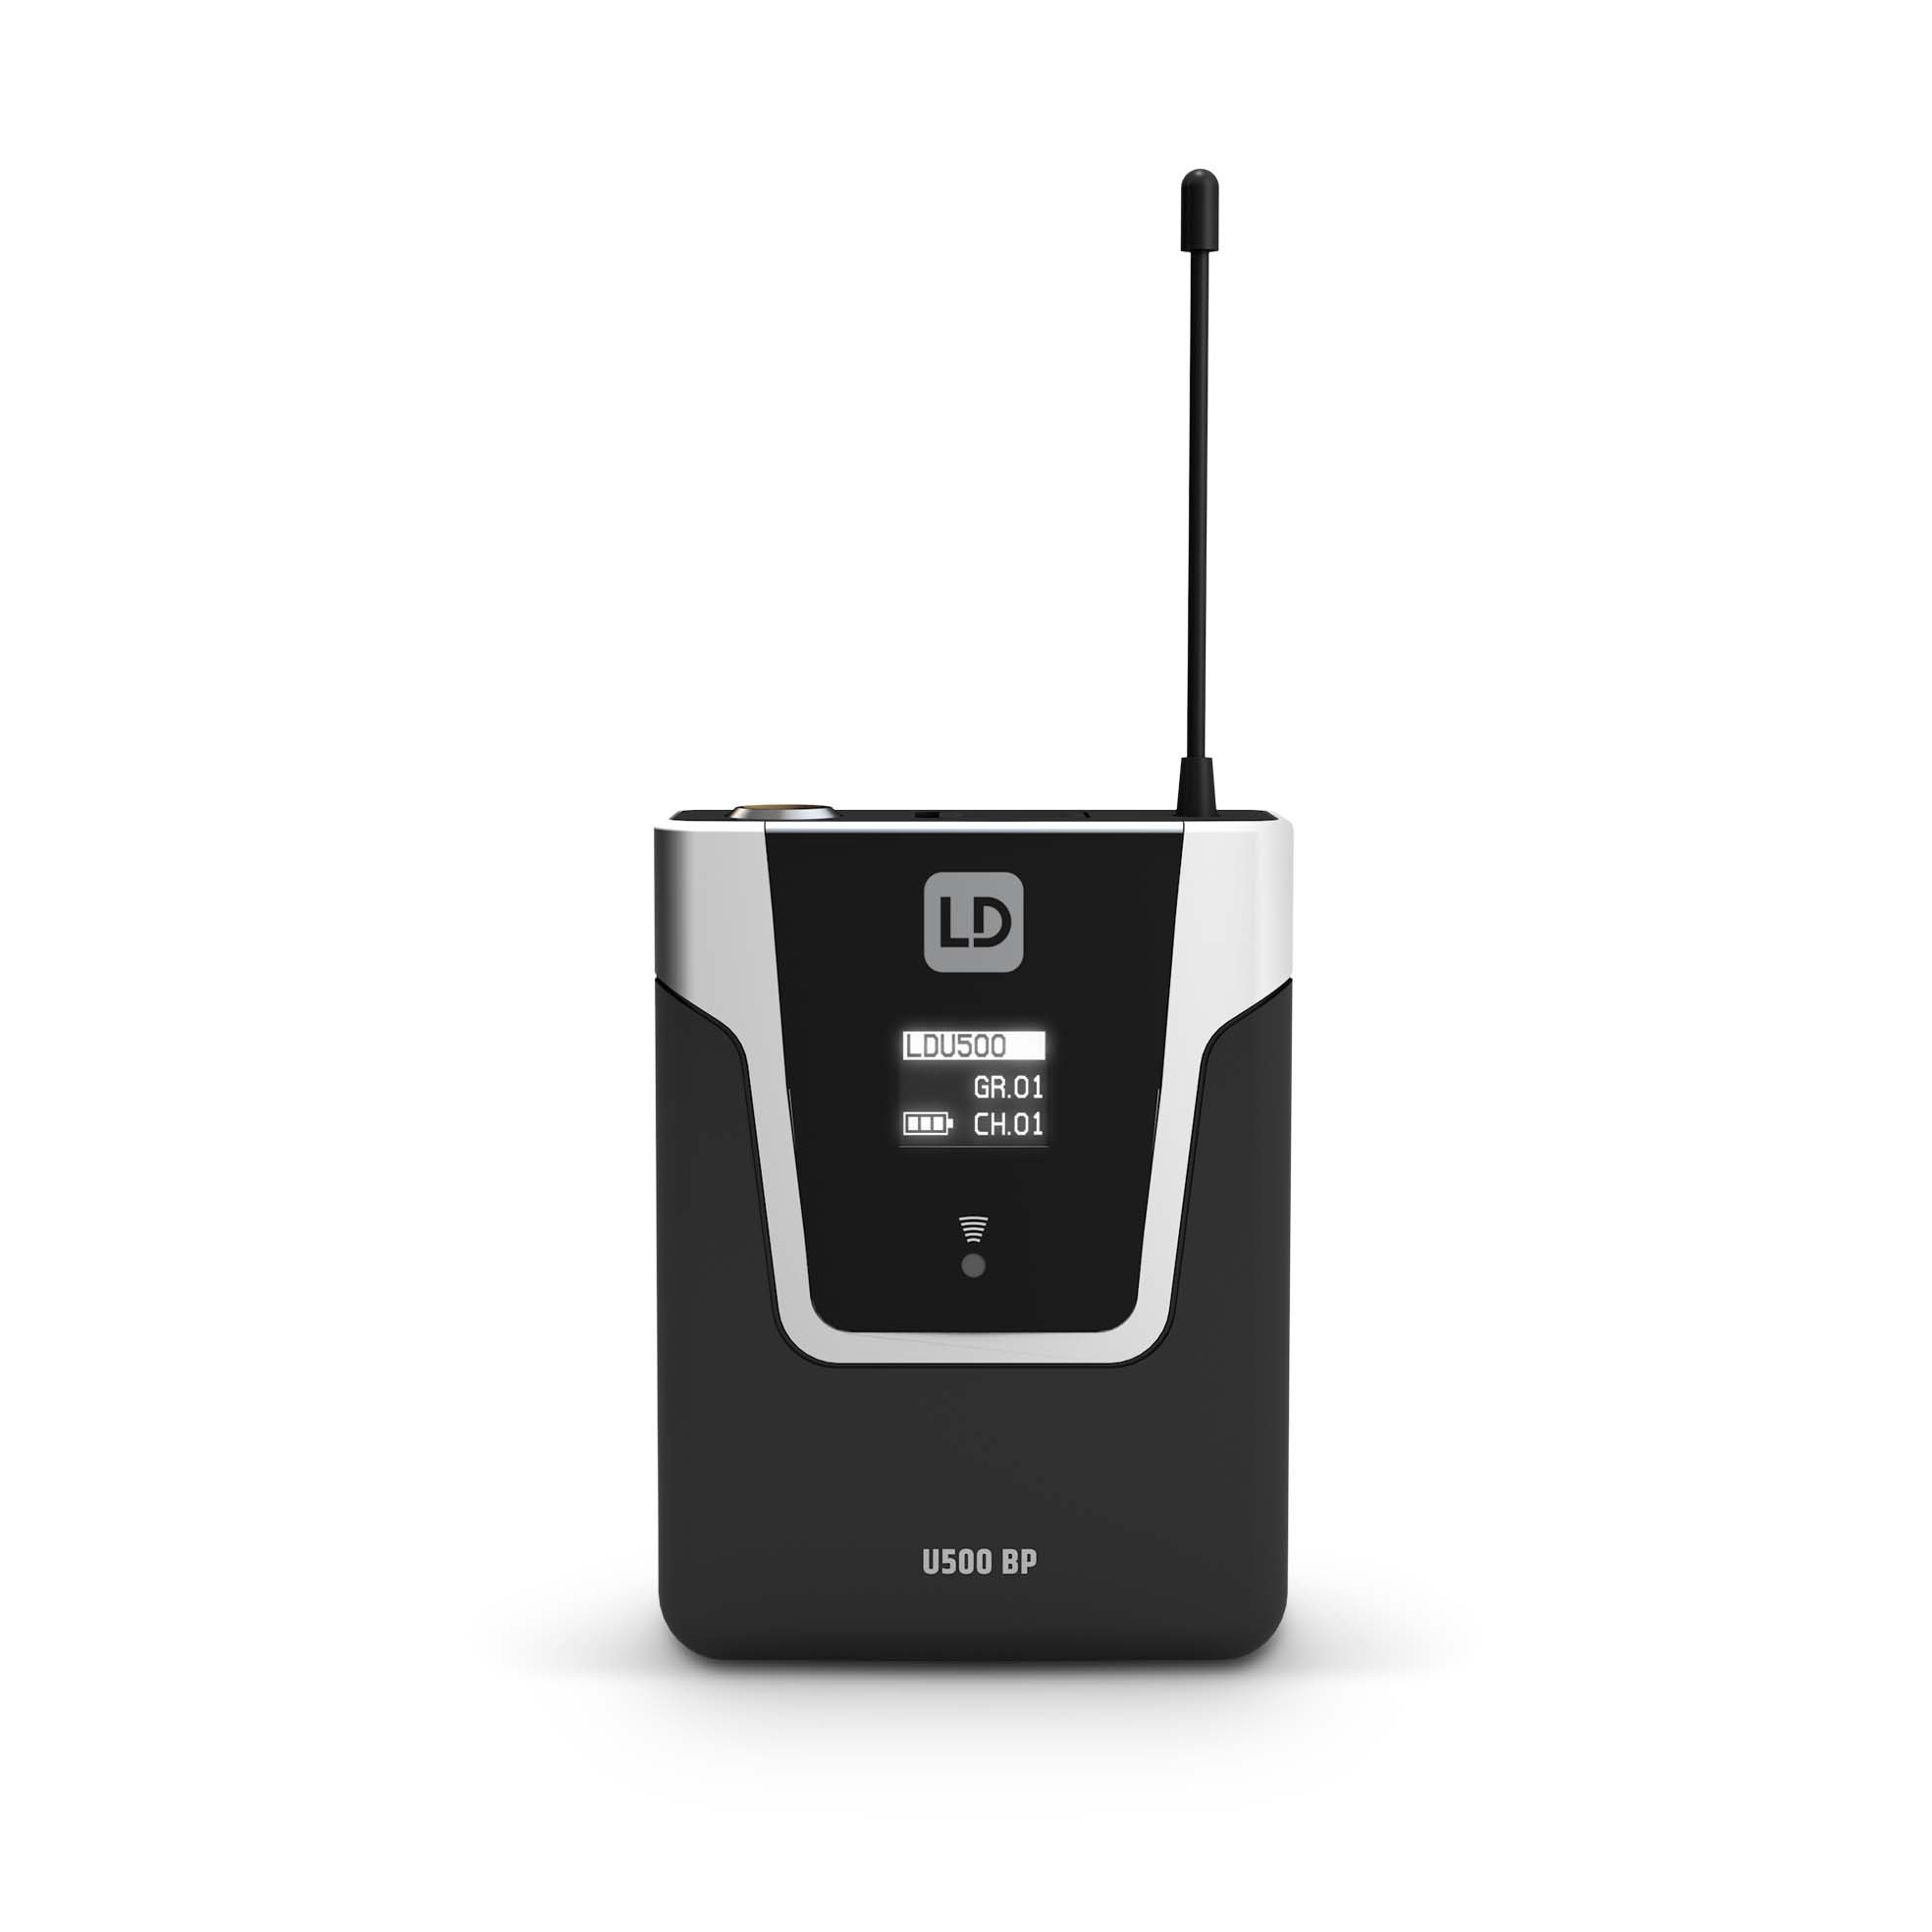 Ld Systems U505 Bphh 2 - Wireless Sender-Empfänger System - Variation 4